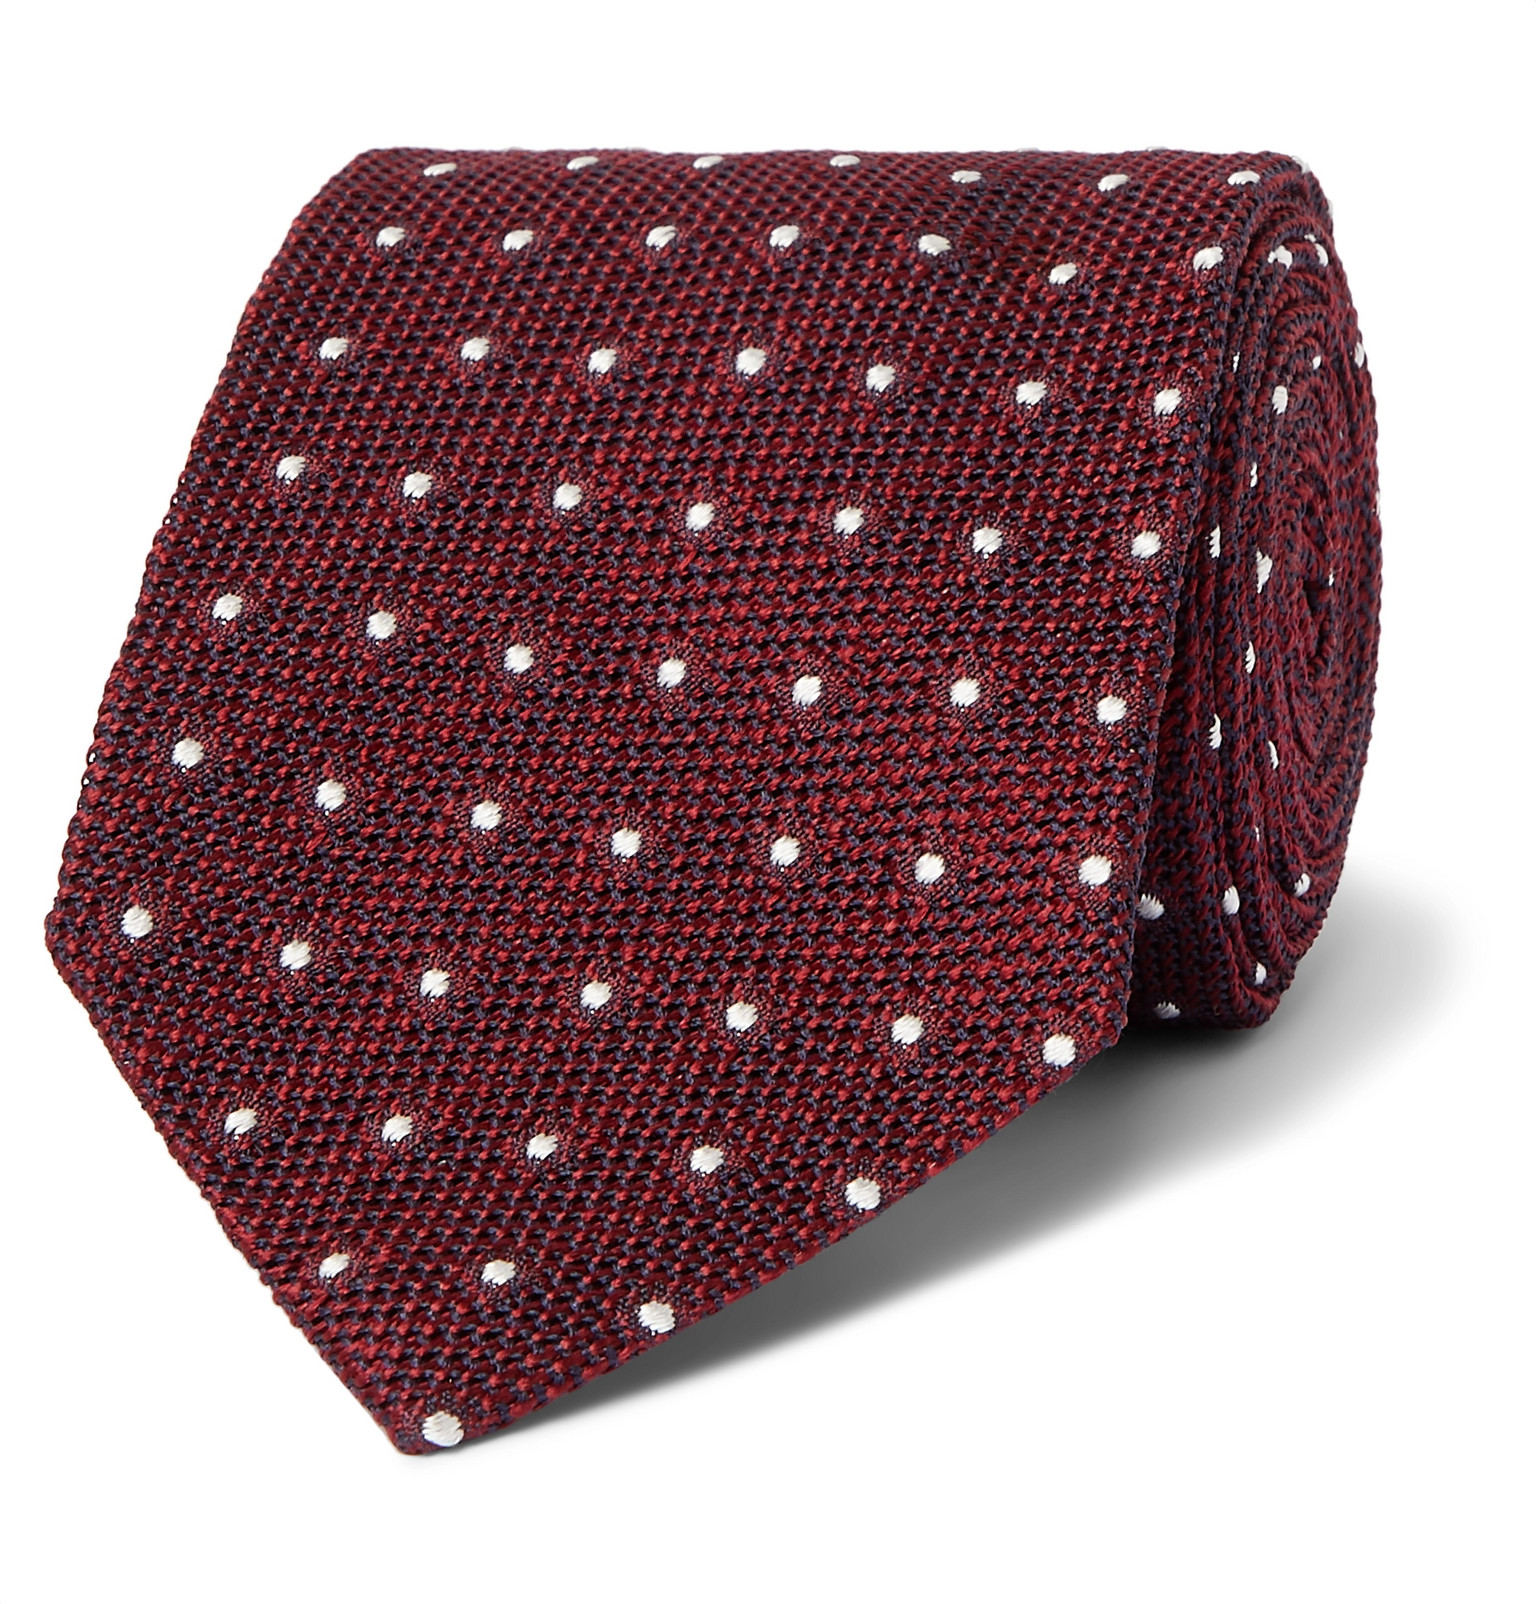 TOM FORD - 8cm Polka-Dot Silk-Jacquard Tie - Men - Burgundy | The ...